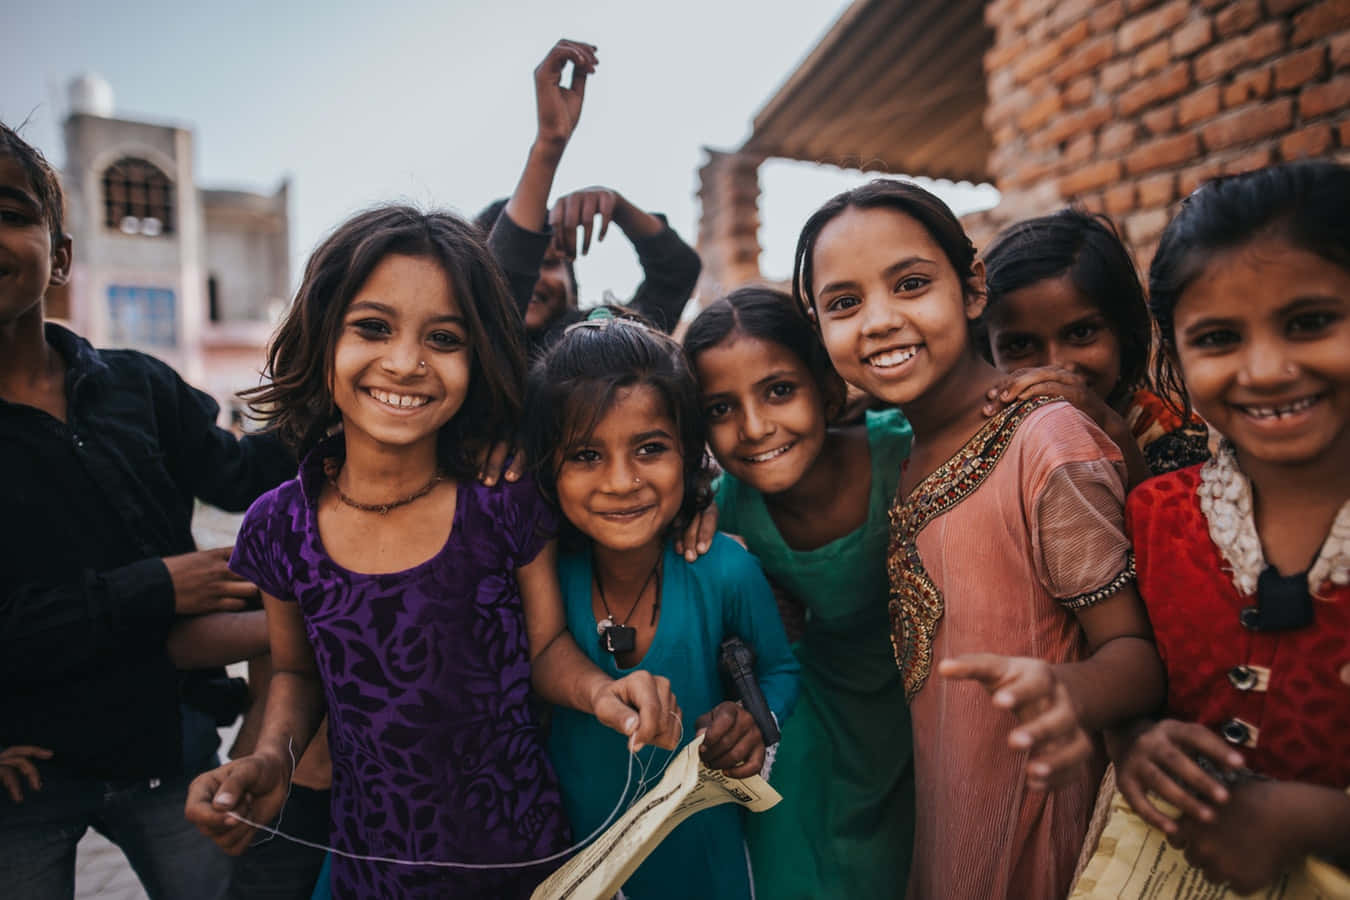 Einegruppe Von Mädchen Lächelt Vor Einem Gebäude.